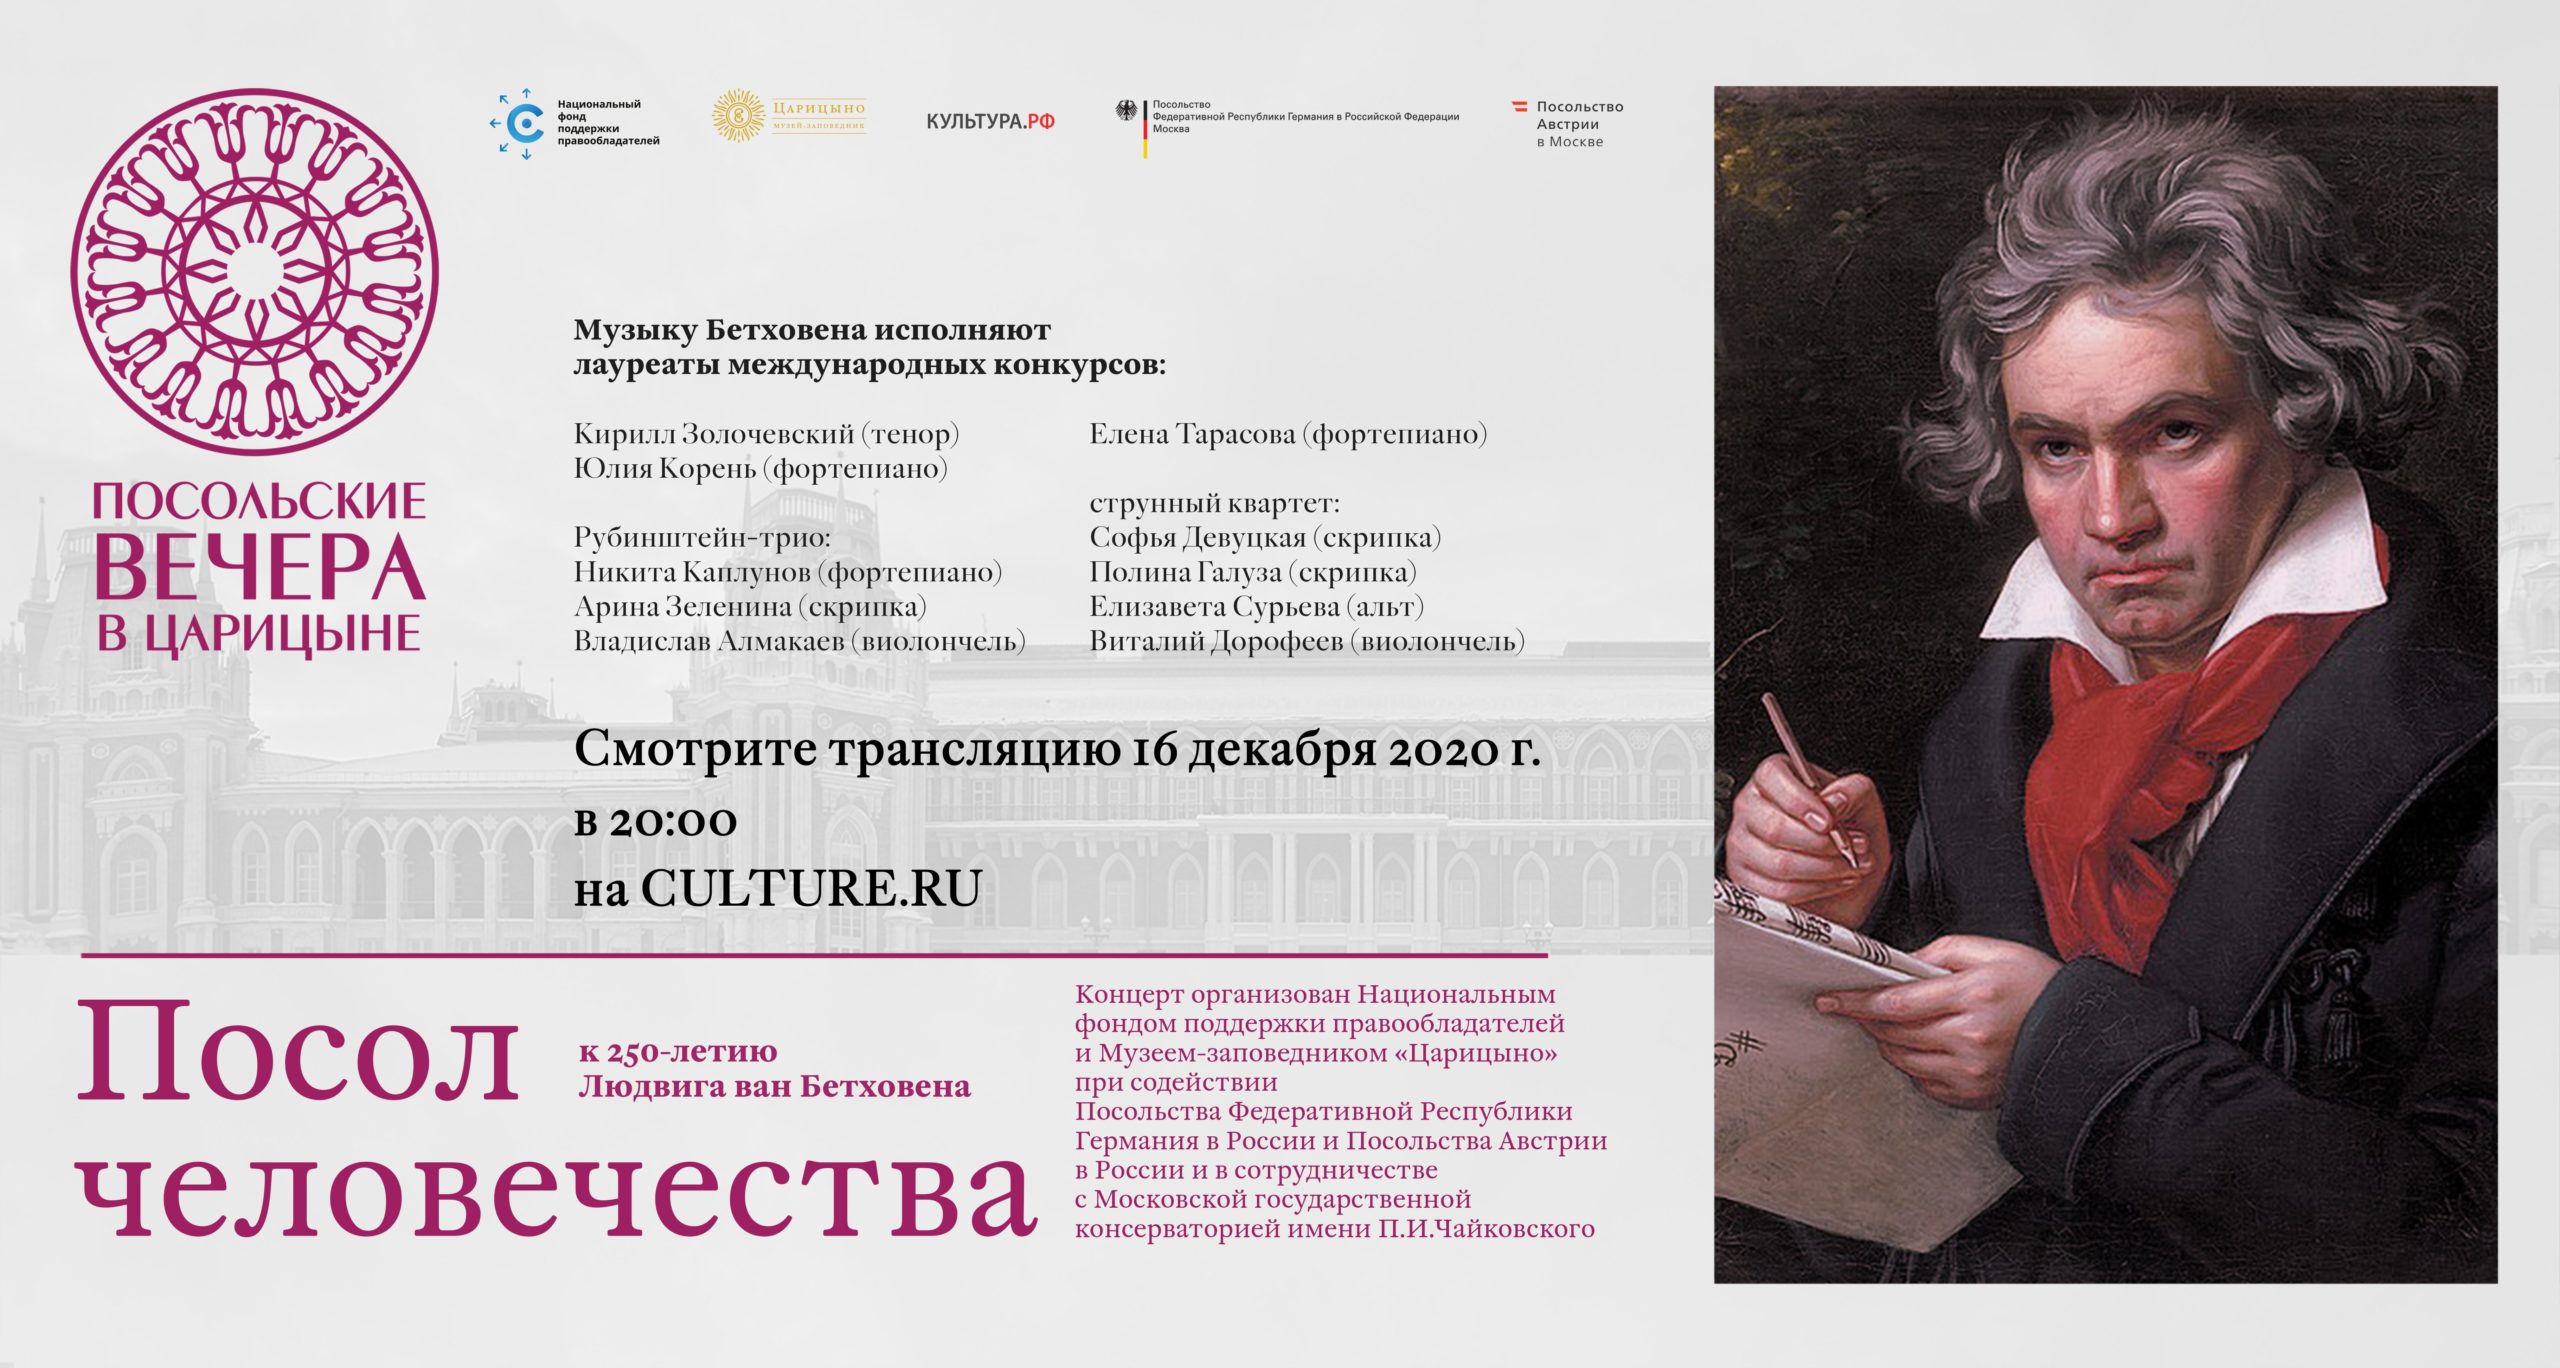 Музыка Бетховена в Царицыне: концерт к 250-летию классика в рамках проекта «Посольские вечера в Царицыне»